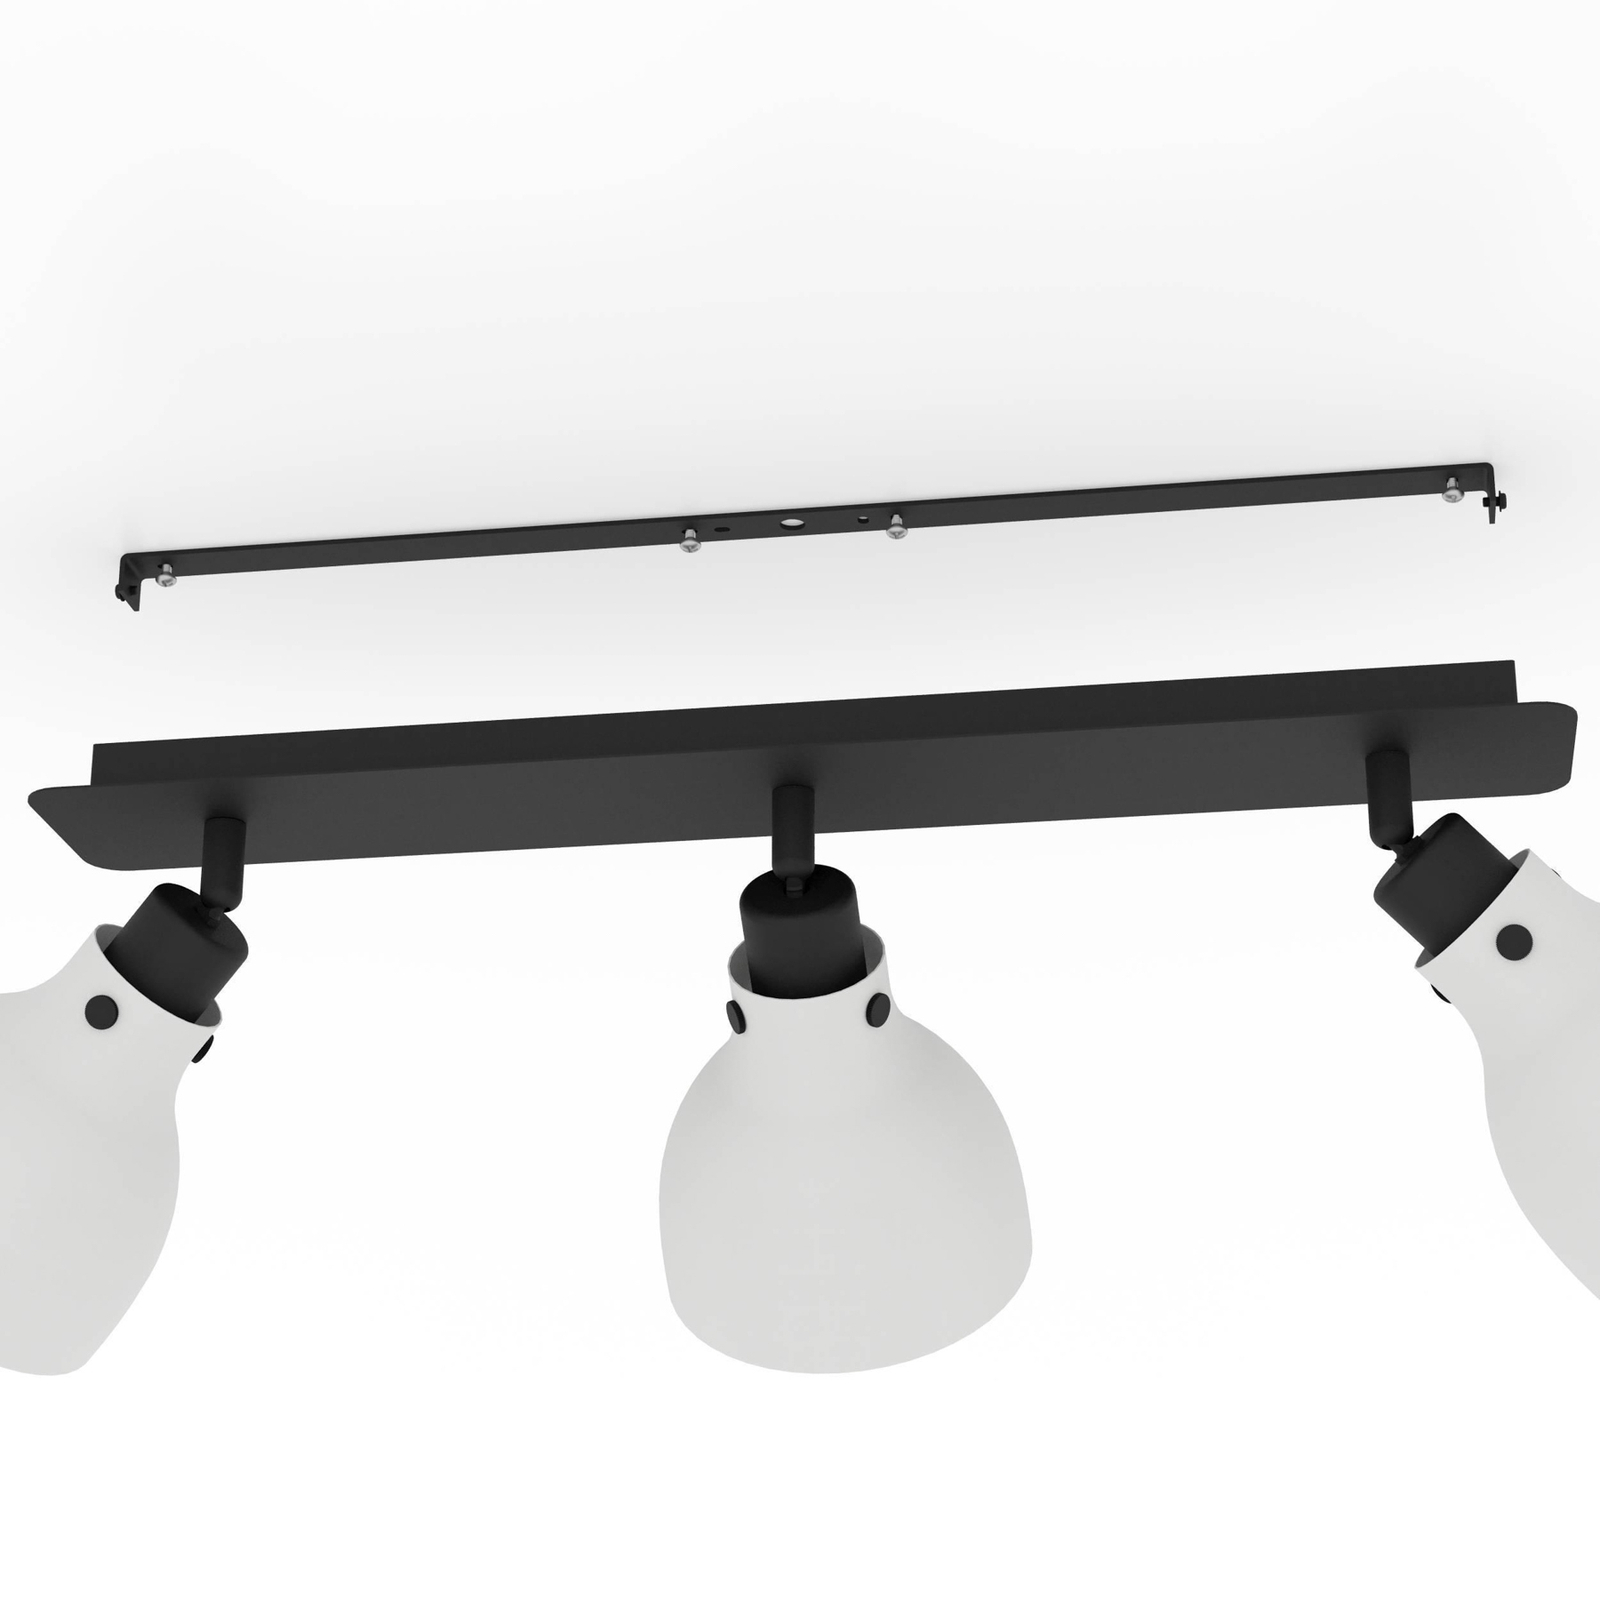 Spot pour plafond Matlock, longueur 74 cm, gris/noir, 3 lampes